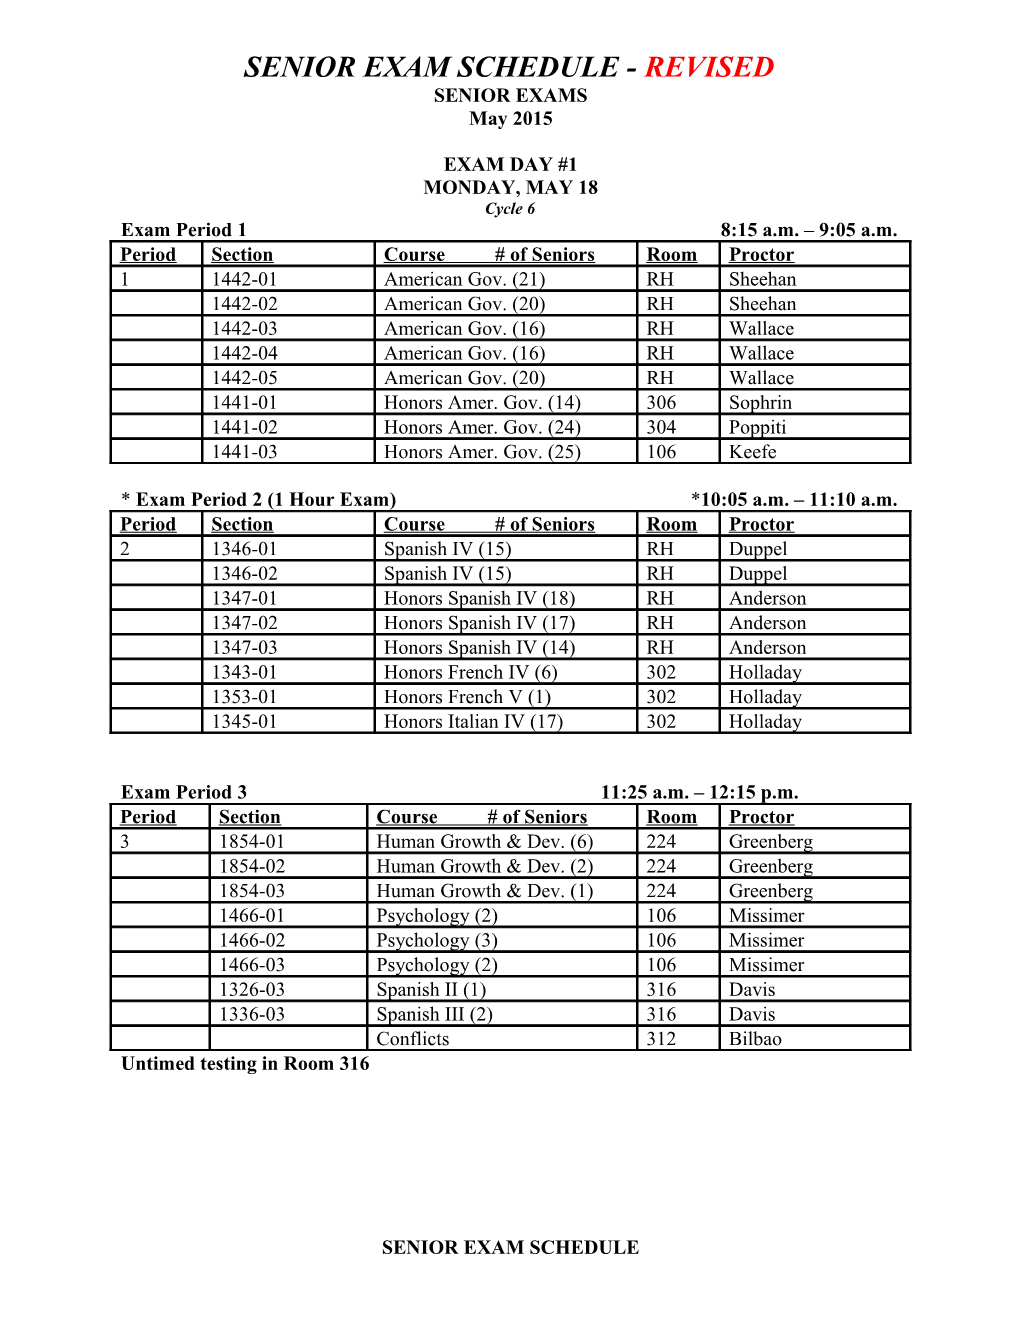 Senior Exam Schedule - Revised